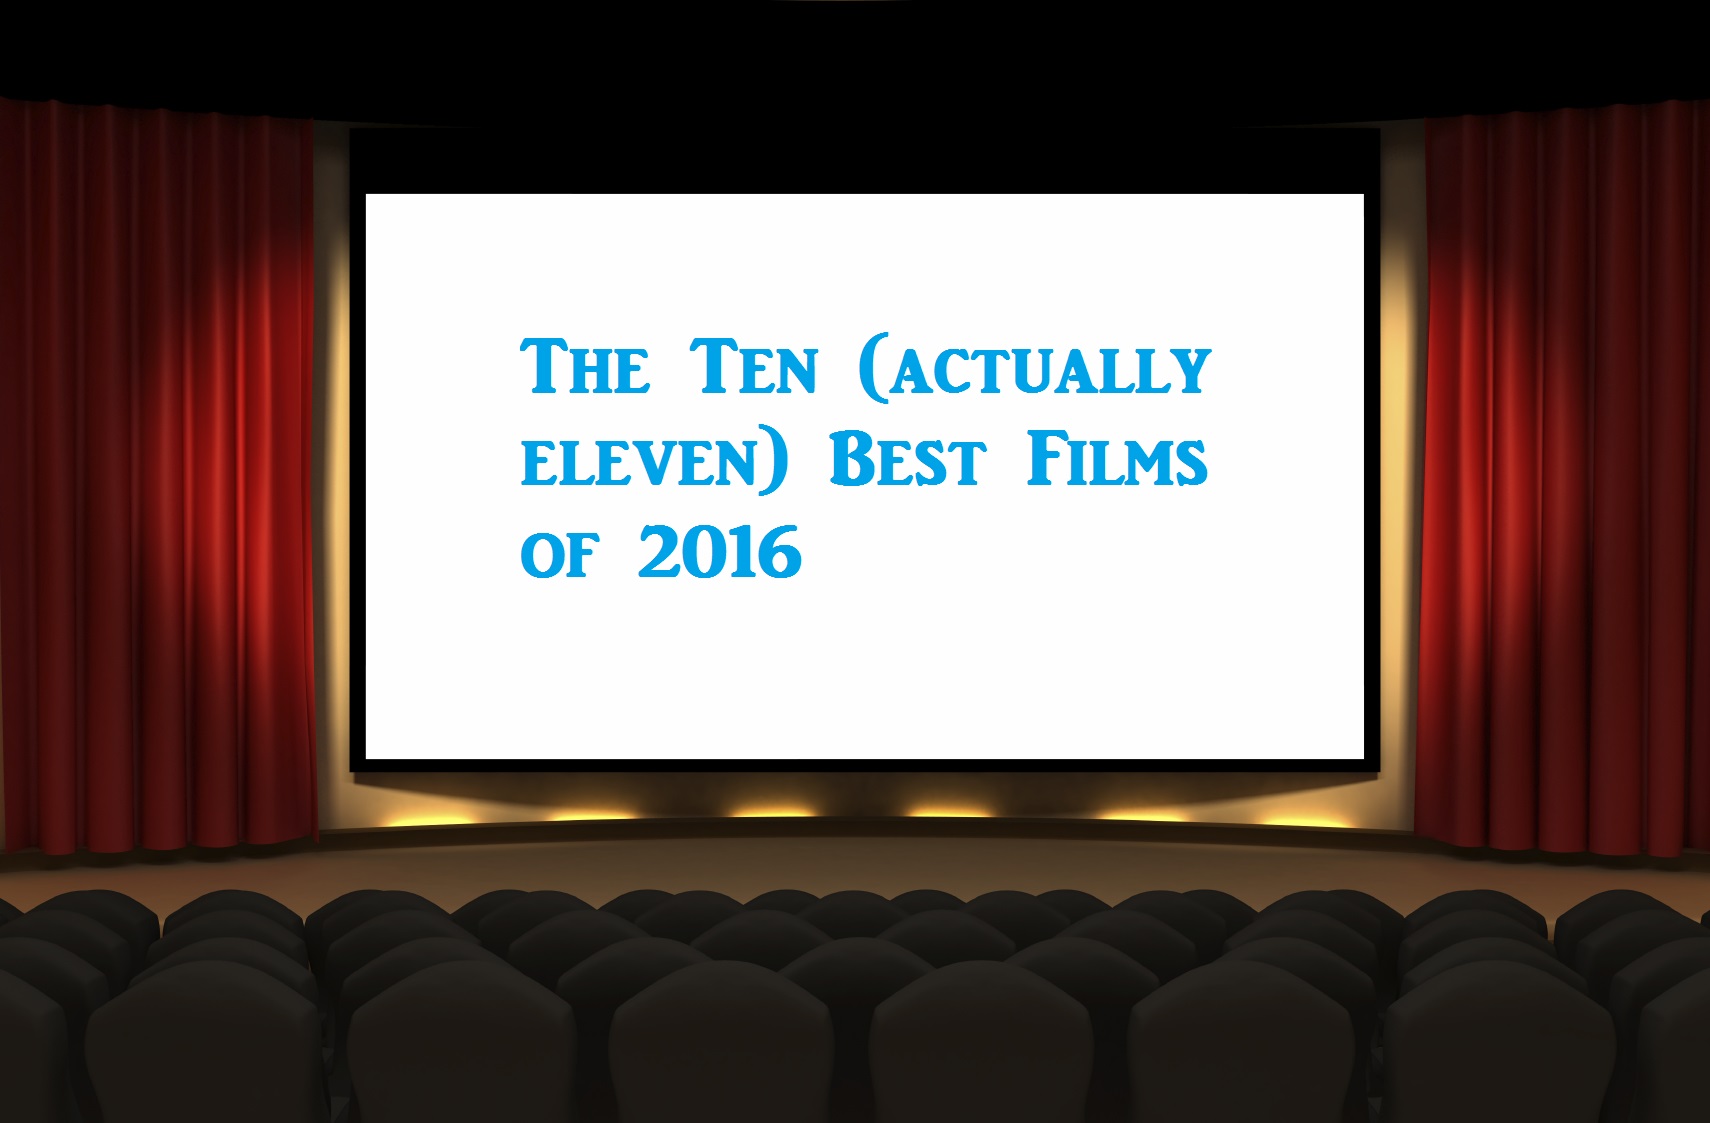 The Ten Best Films of 2016